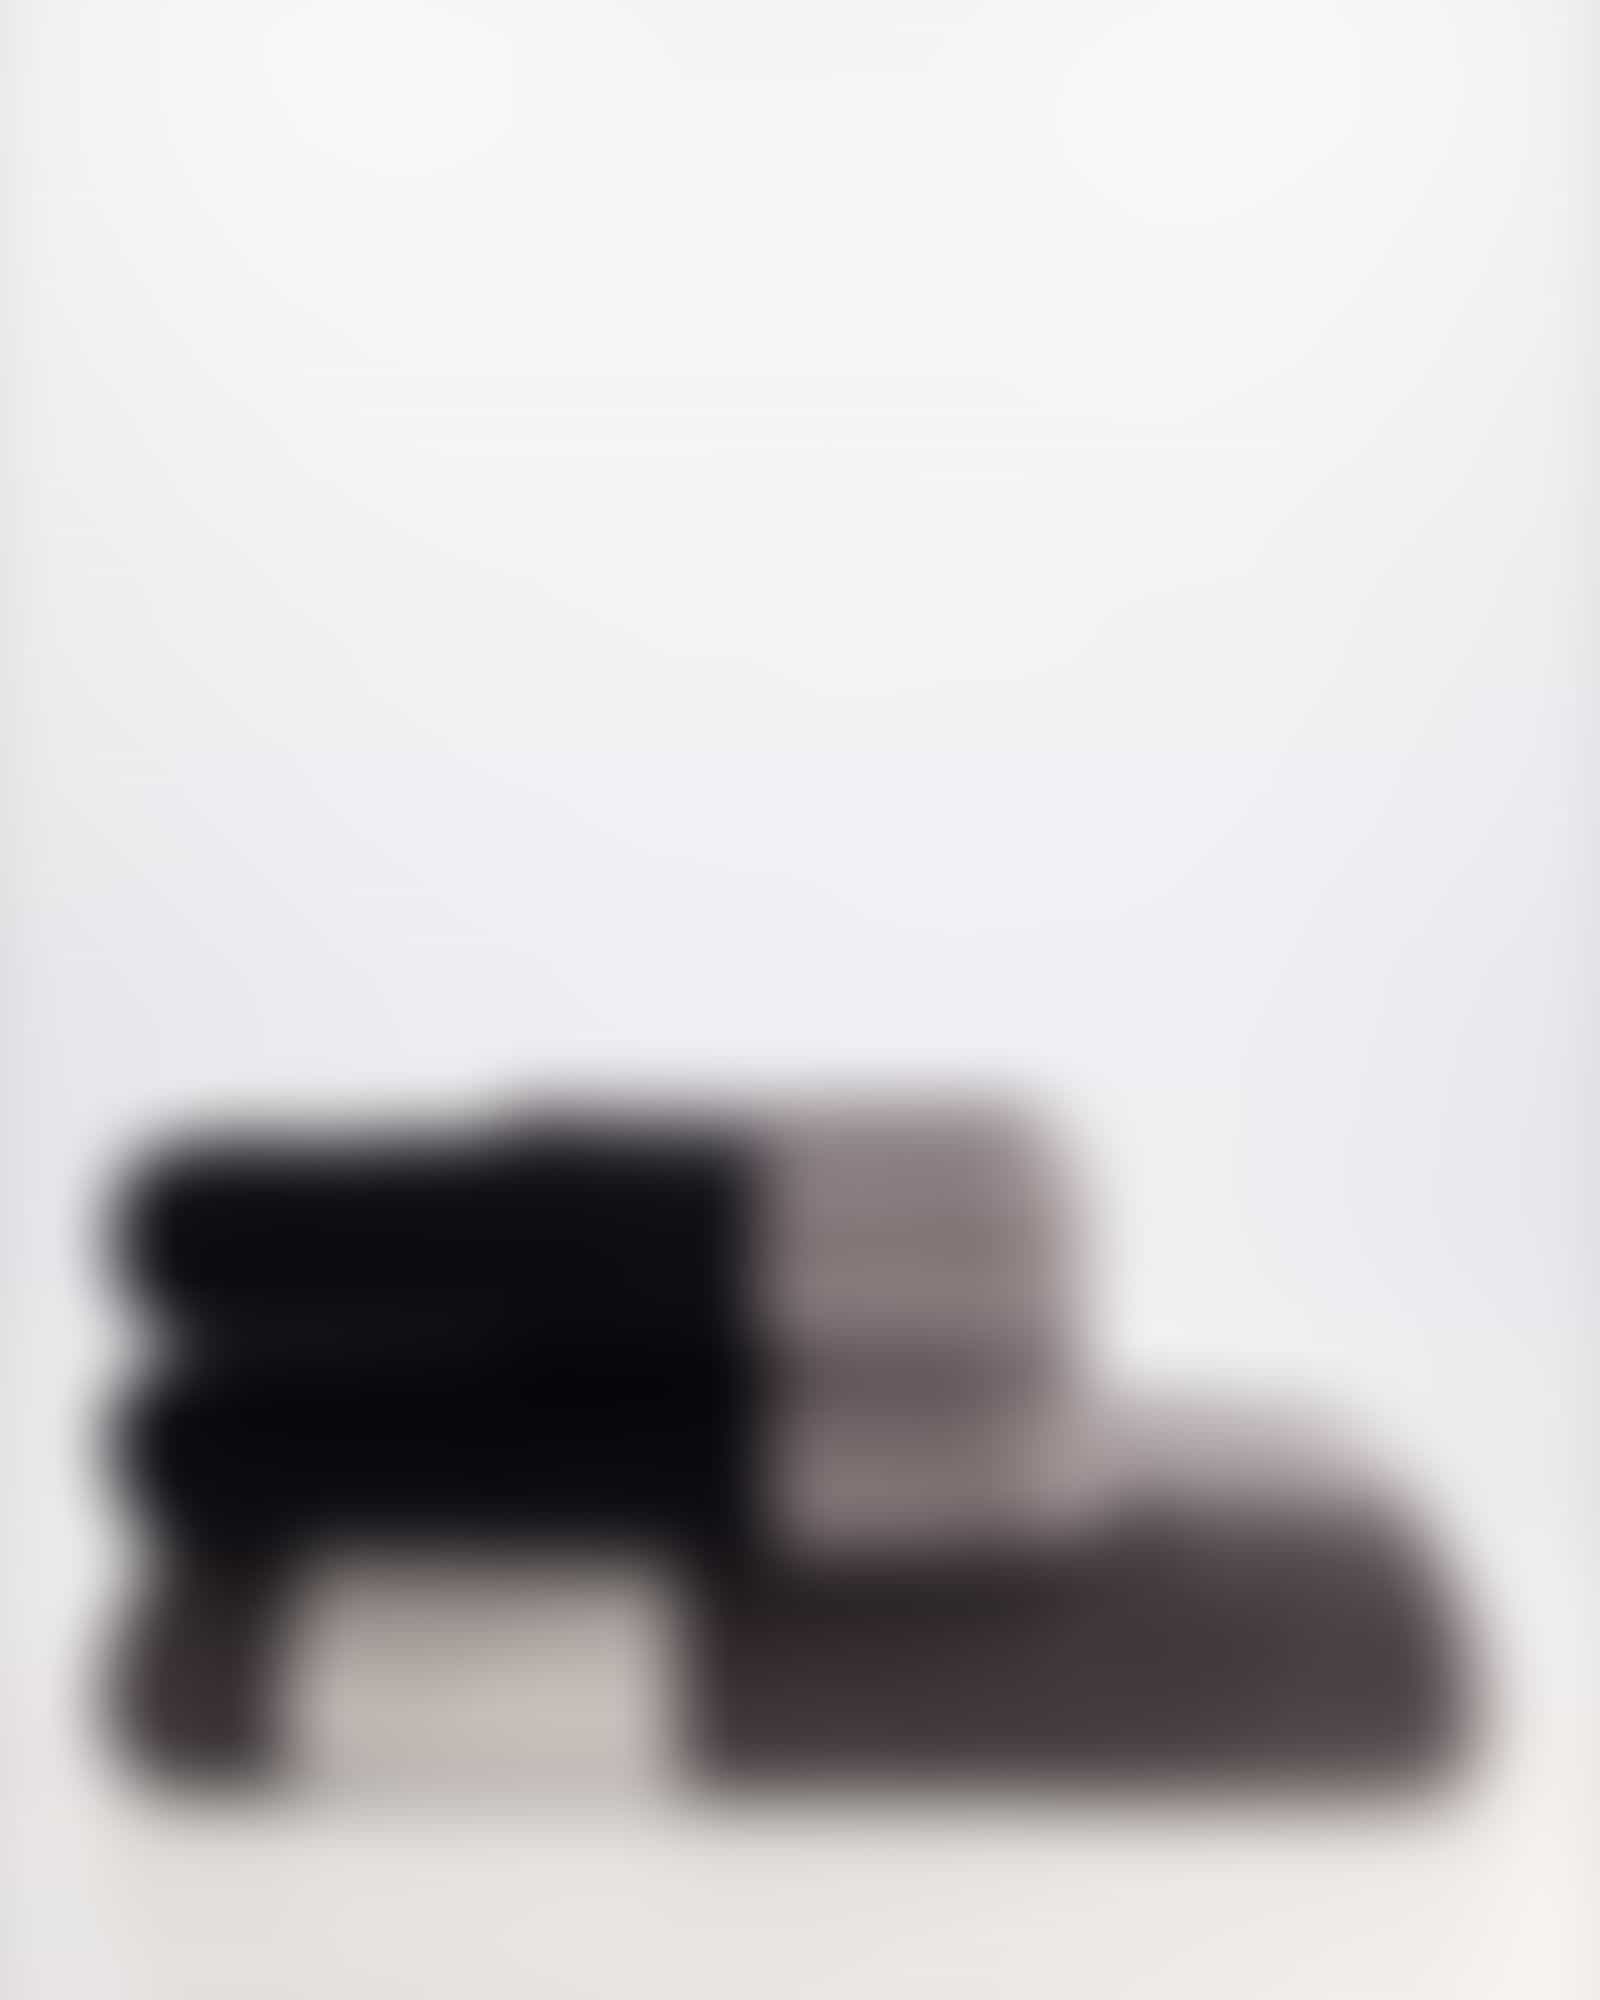 Cawö Handtücher Shades Karo 6236 - Farbe: stein - 77 - Handtuch 50x100 cm